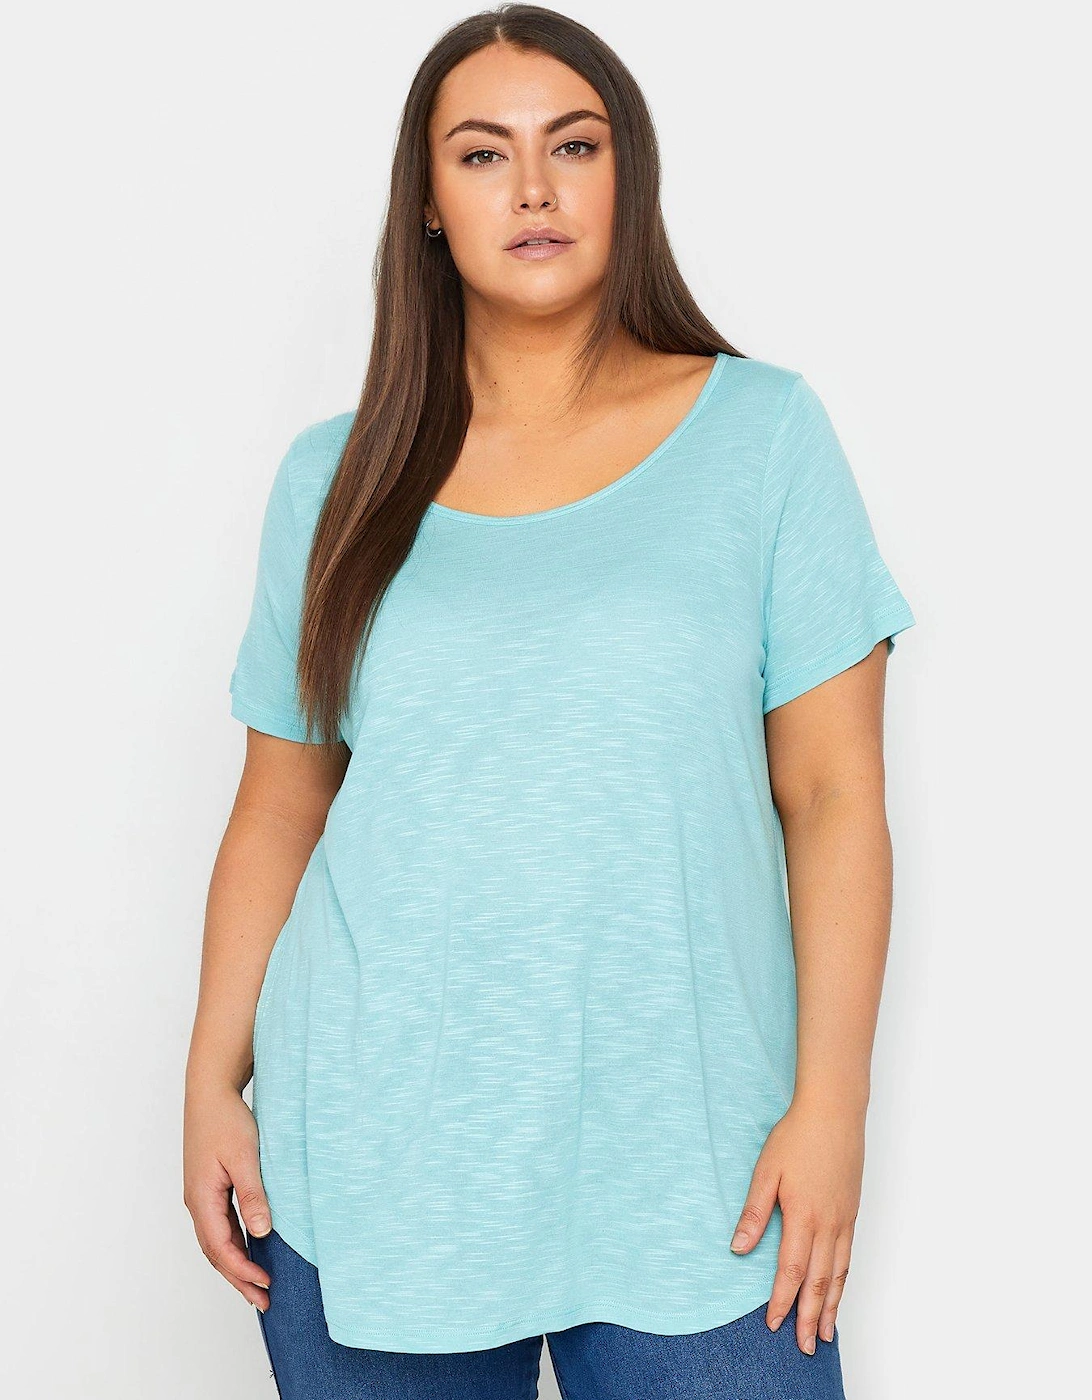 Light Short Sleeve T-shirt - Blue, 2 of 1